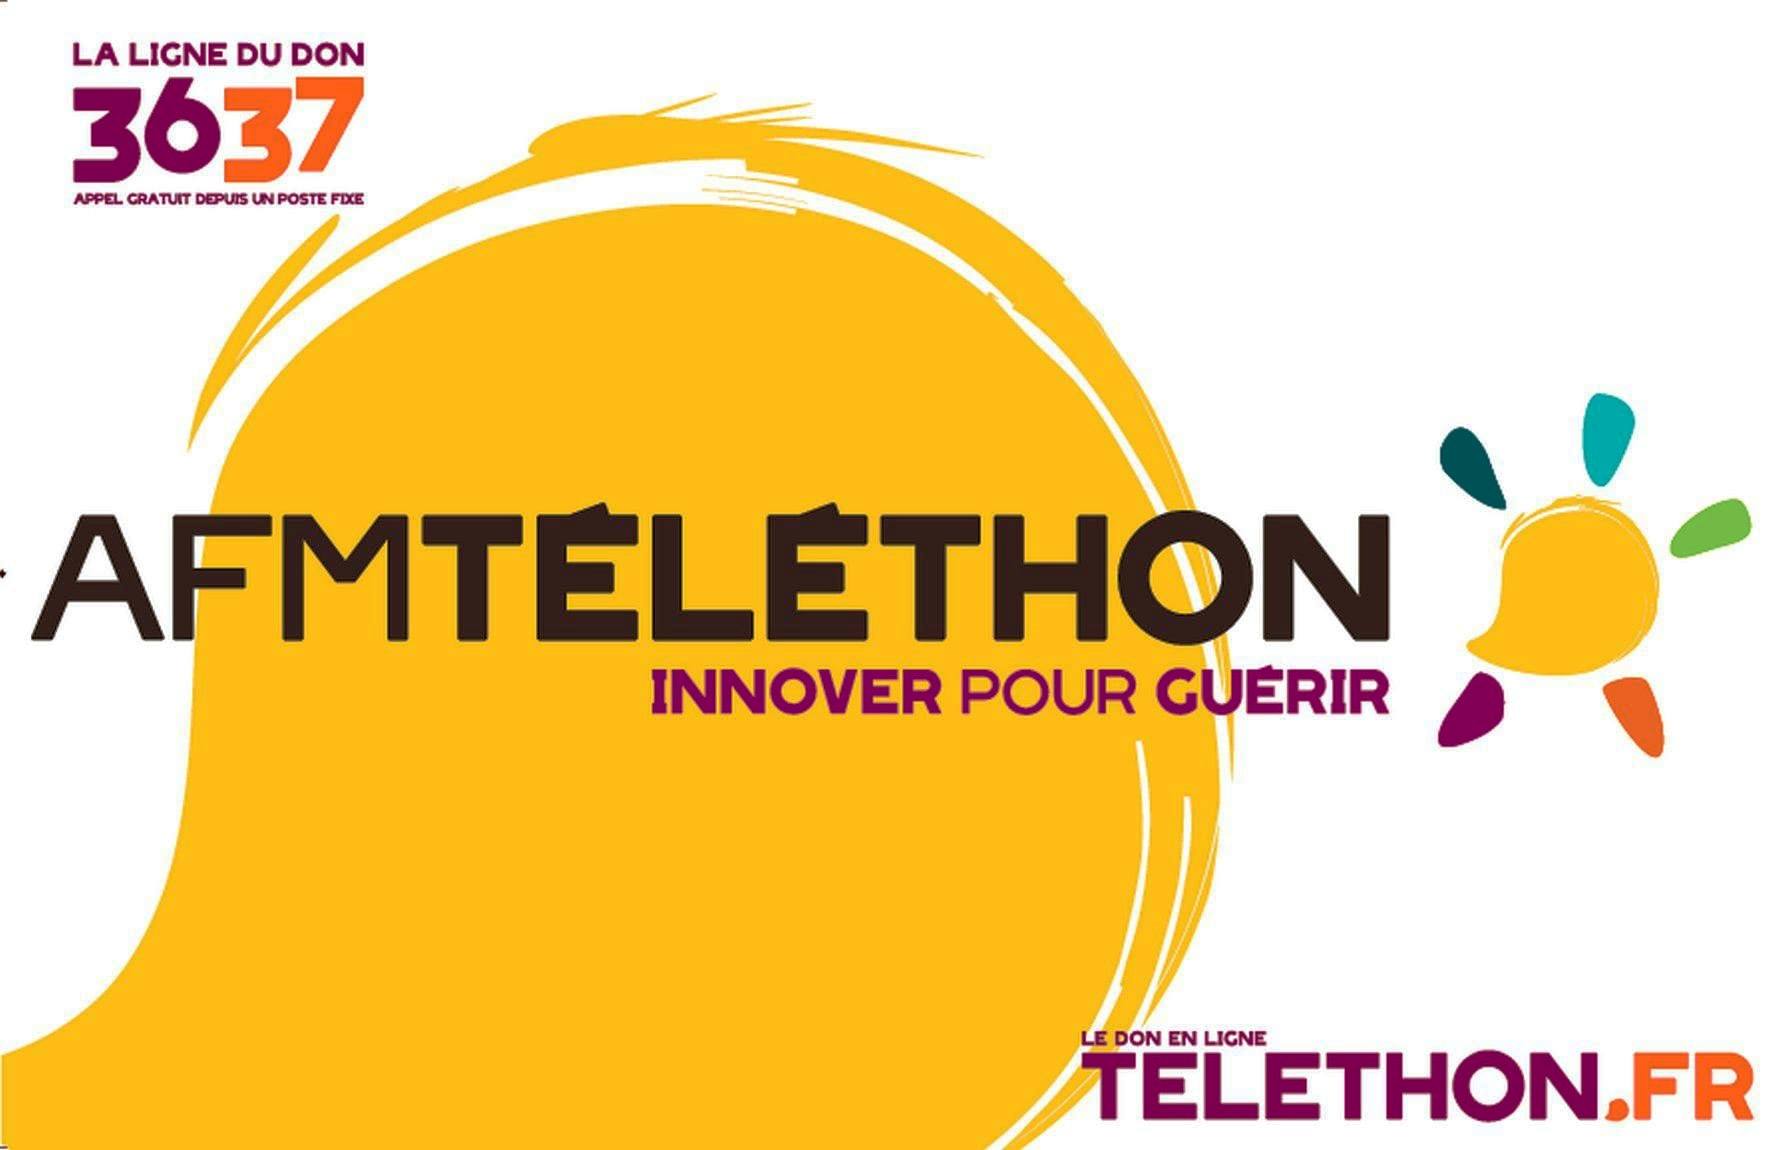 Alle leuke evenementen! : Téléthon : vente de saucisses fraîches